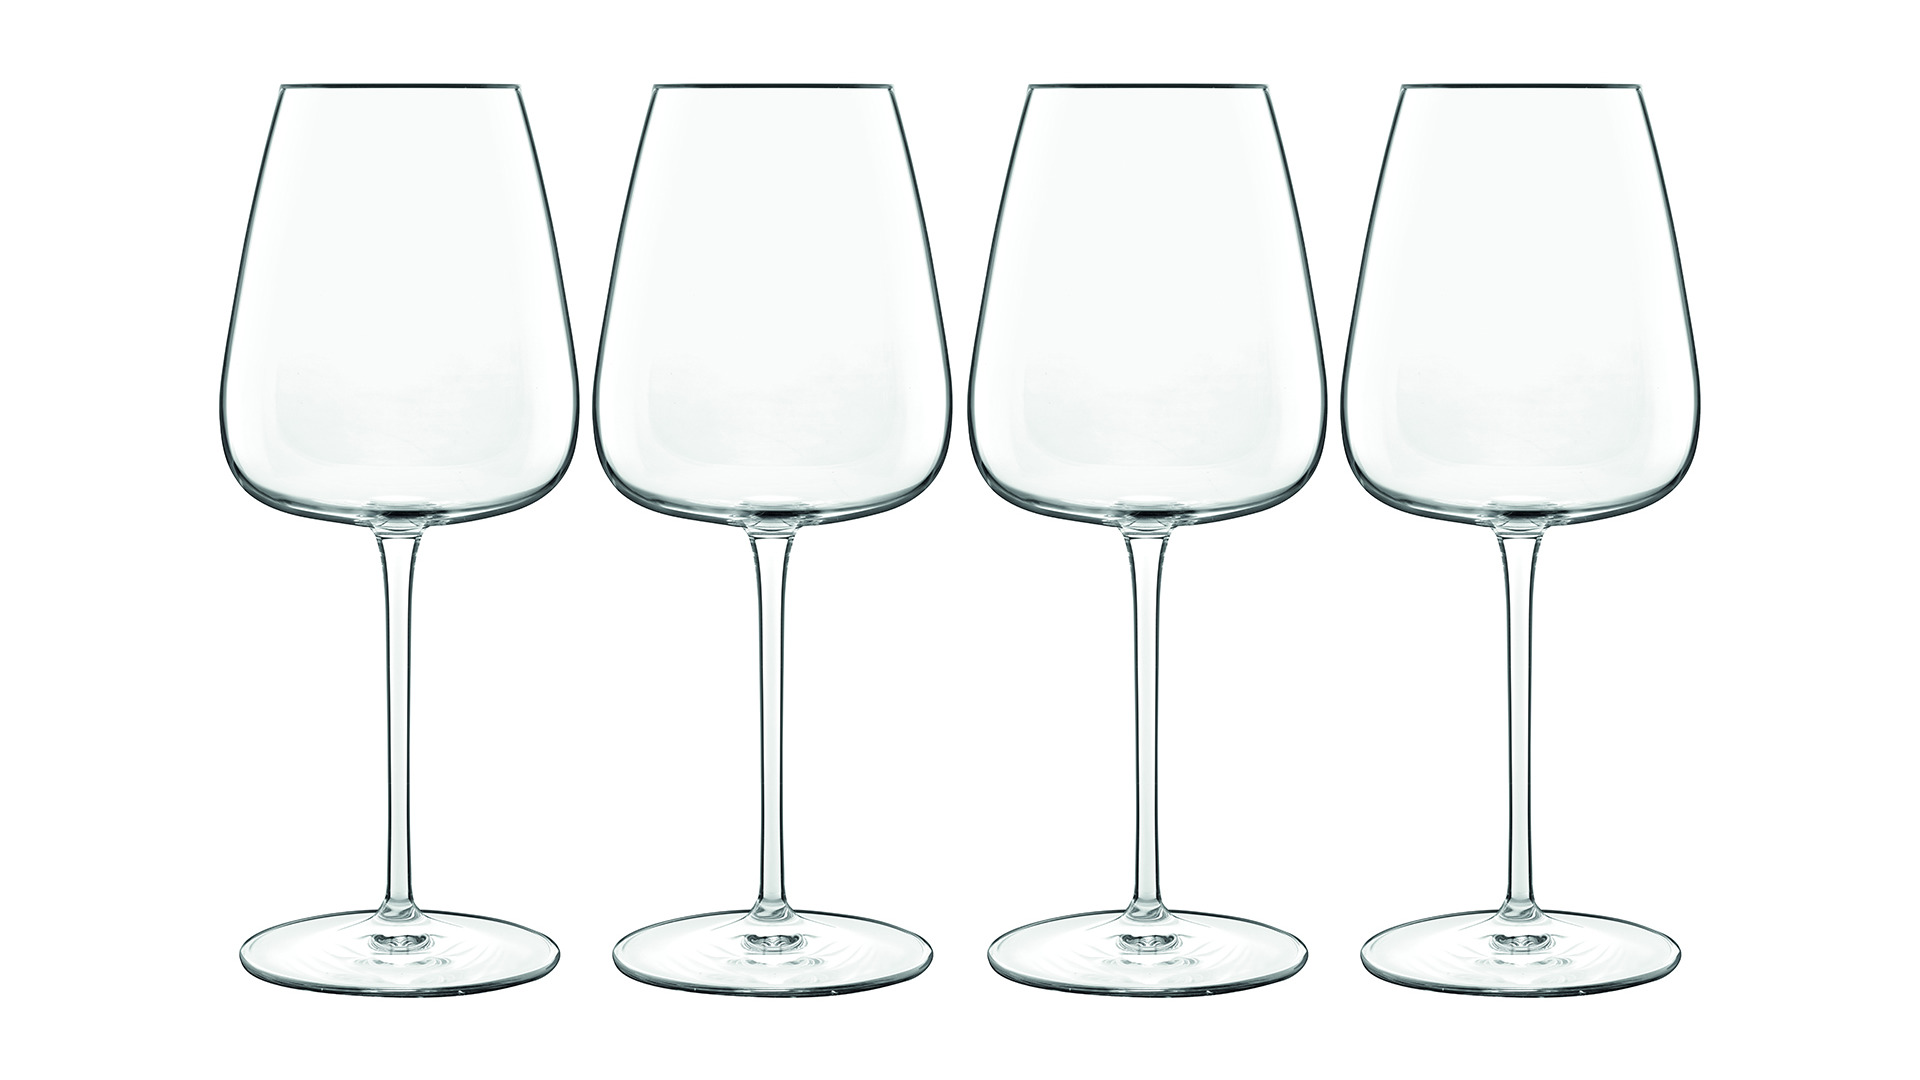 Набор бокалов для белого вина Luigi Bormioli Талисман Шардоне 450 мл, 4 шт, стекло хрустальное